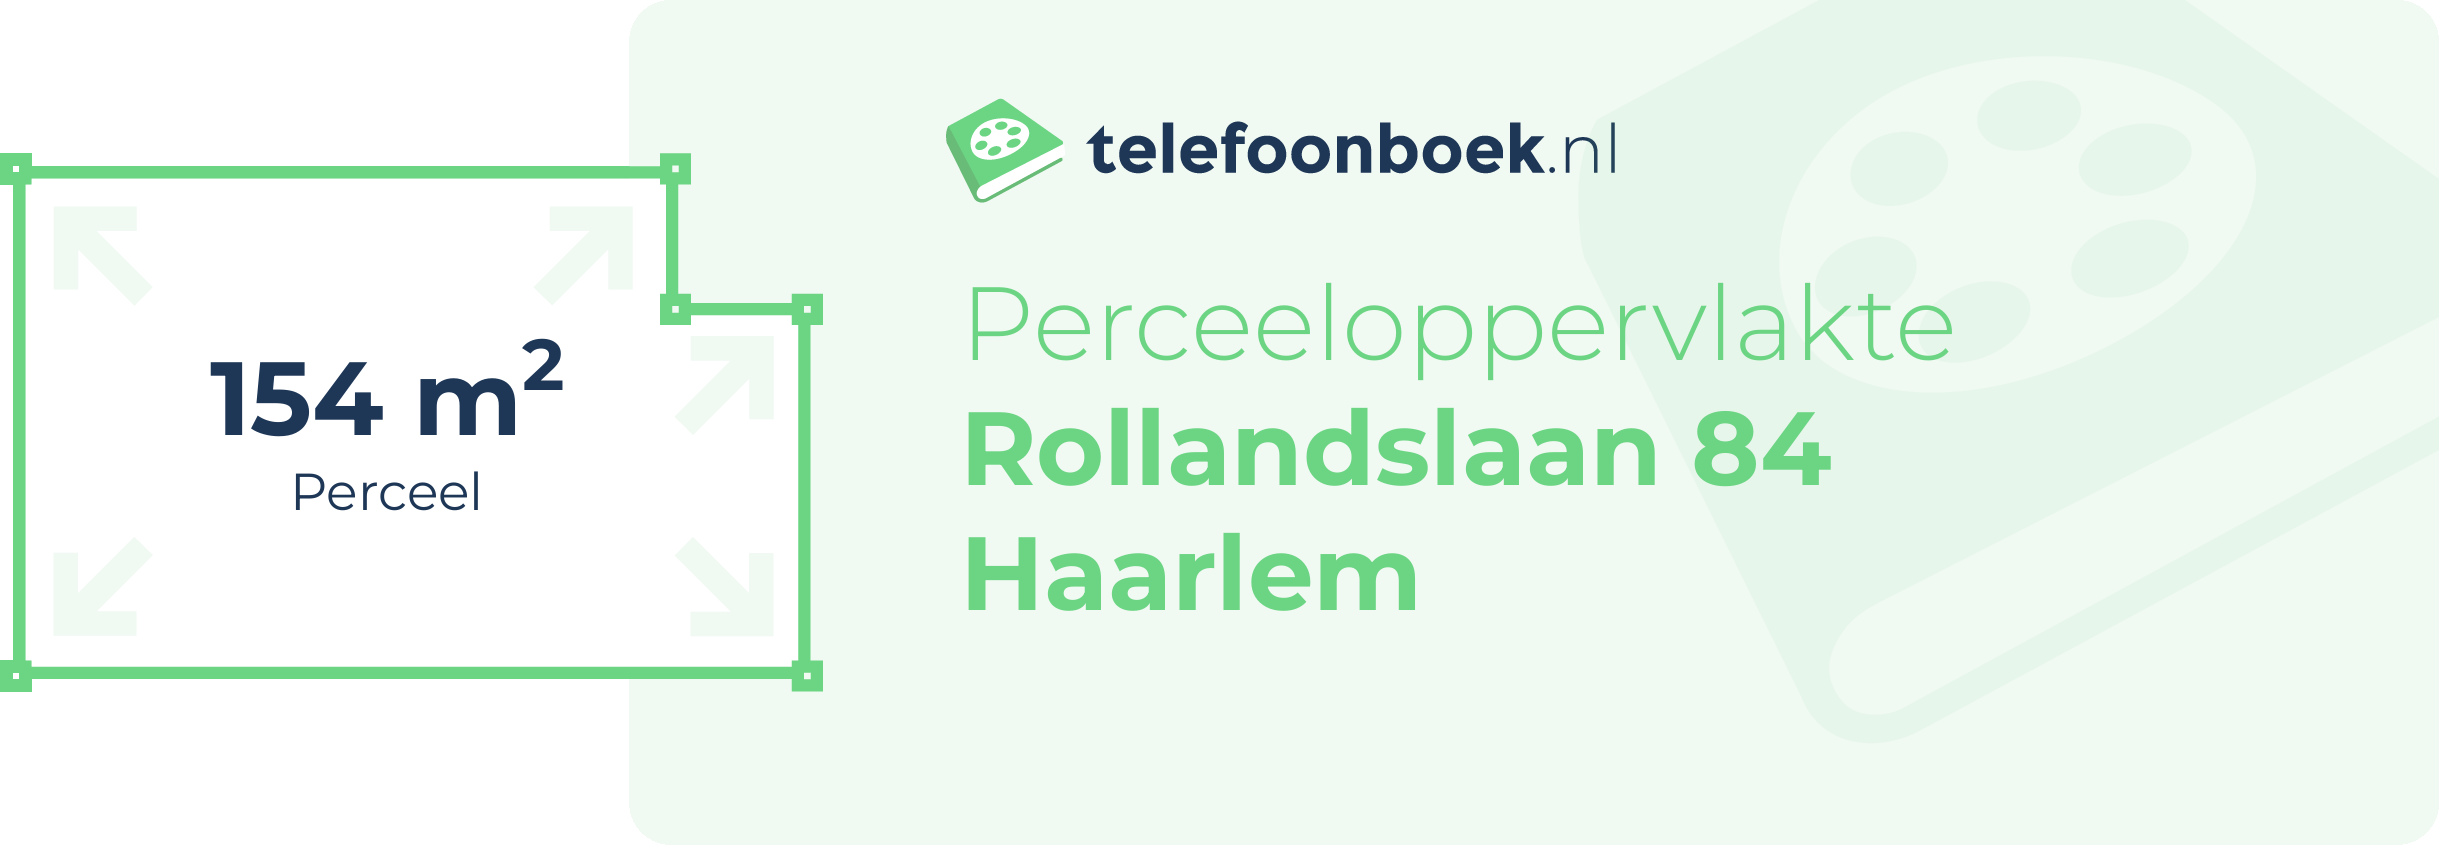 Perceeloppervlakte Rollandslaan 84 Haarlem